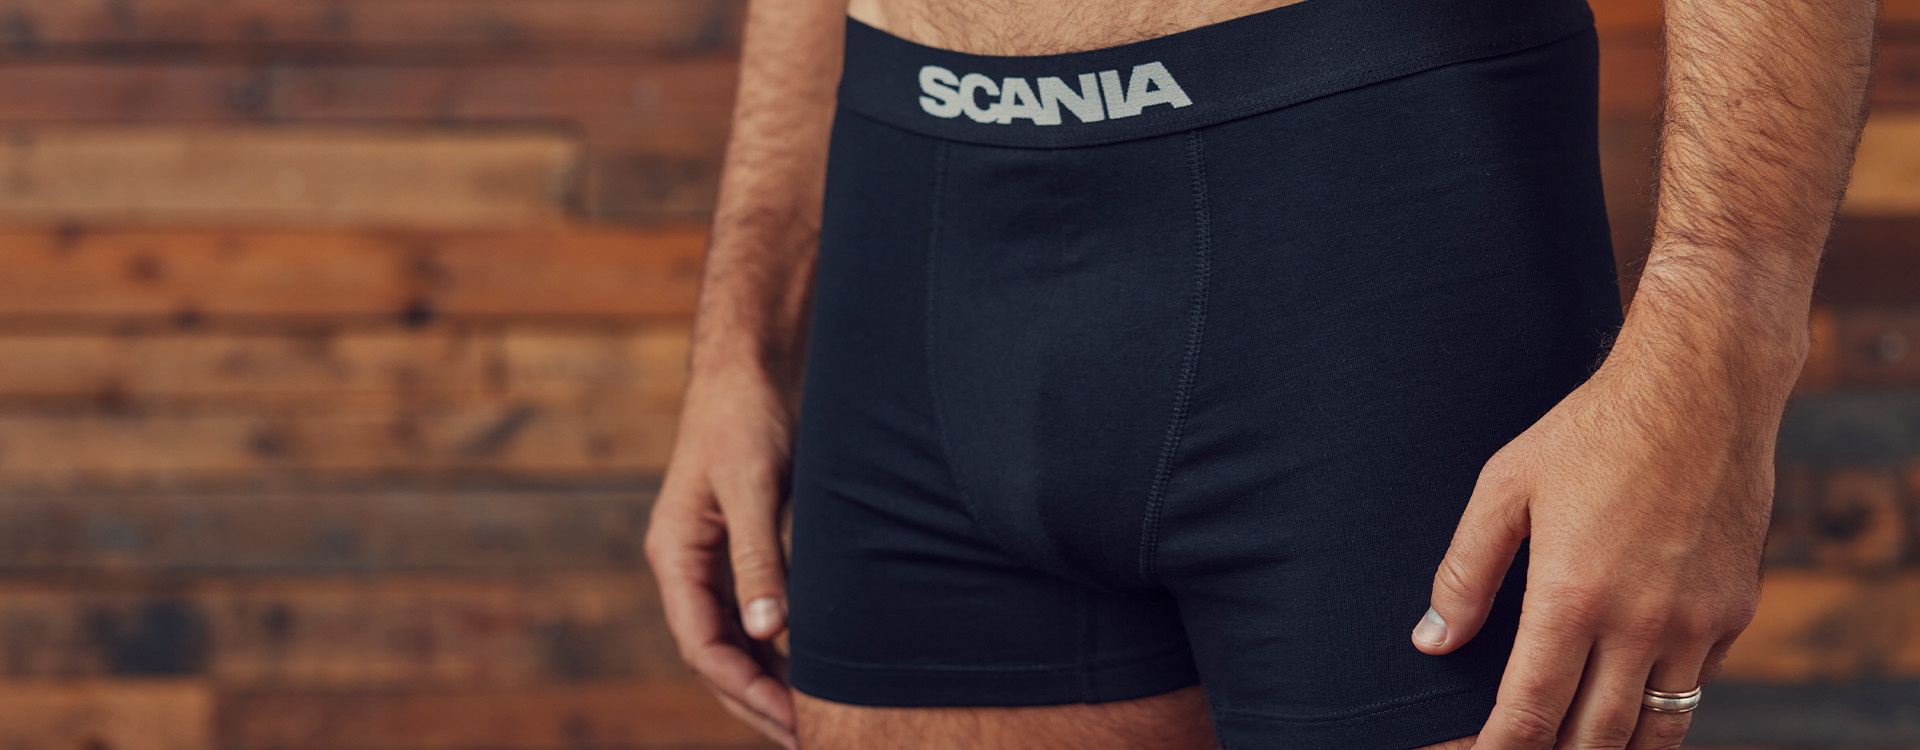 https://shop.scania.com/media/wysiwyg/M_Underwear.jpg